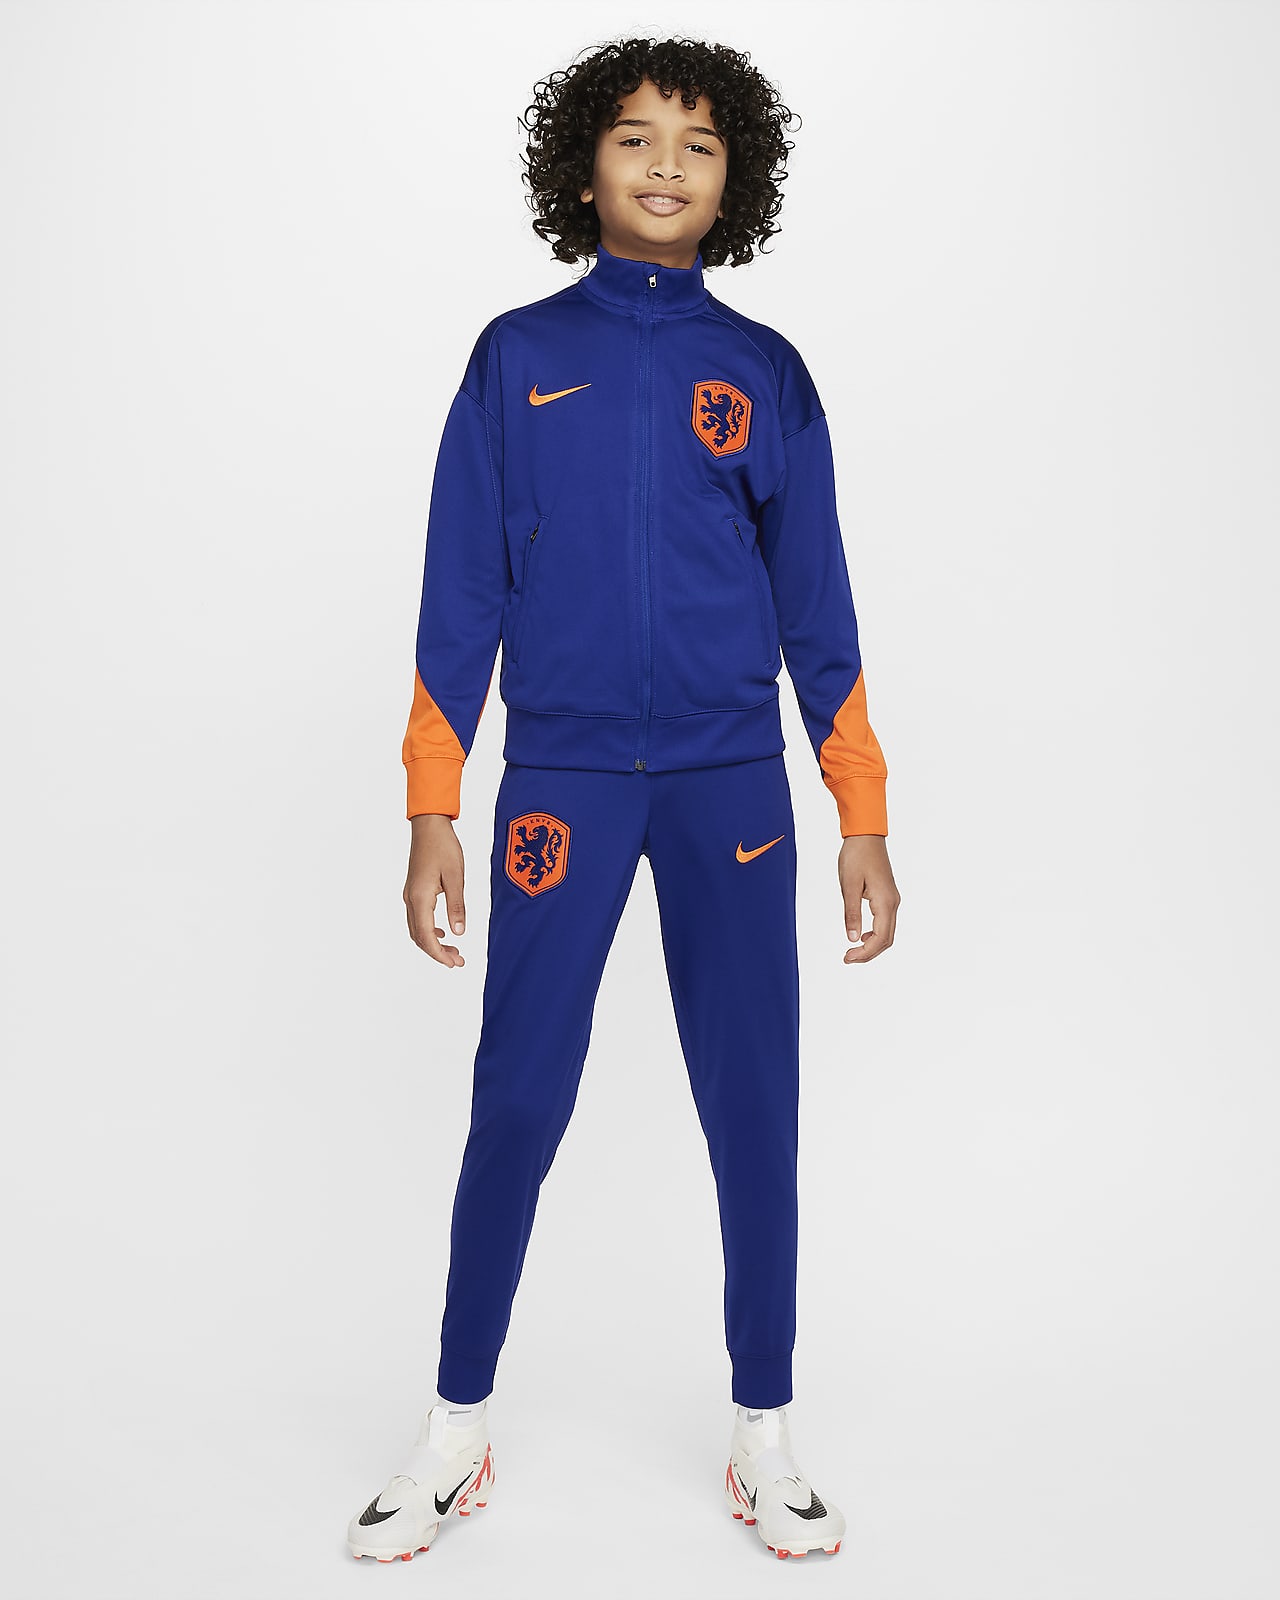 Països Baixos Strike Xandall de futbol de teixit Knit Nike Dri-FIT - Nen/a